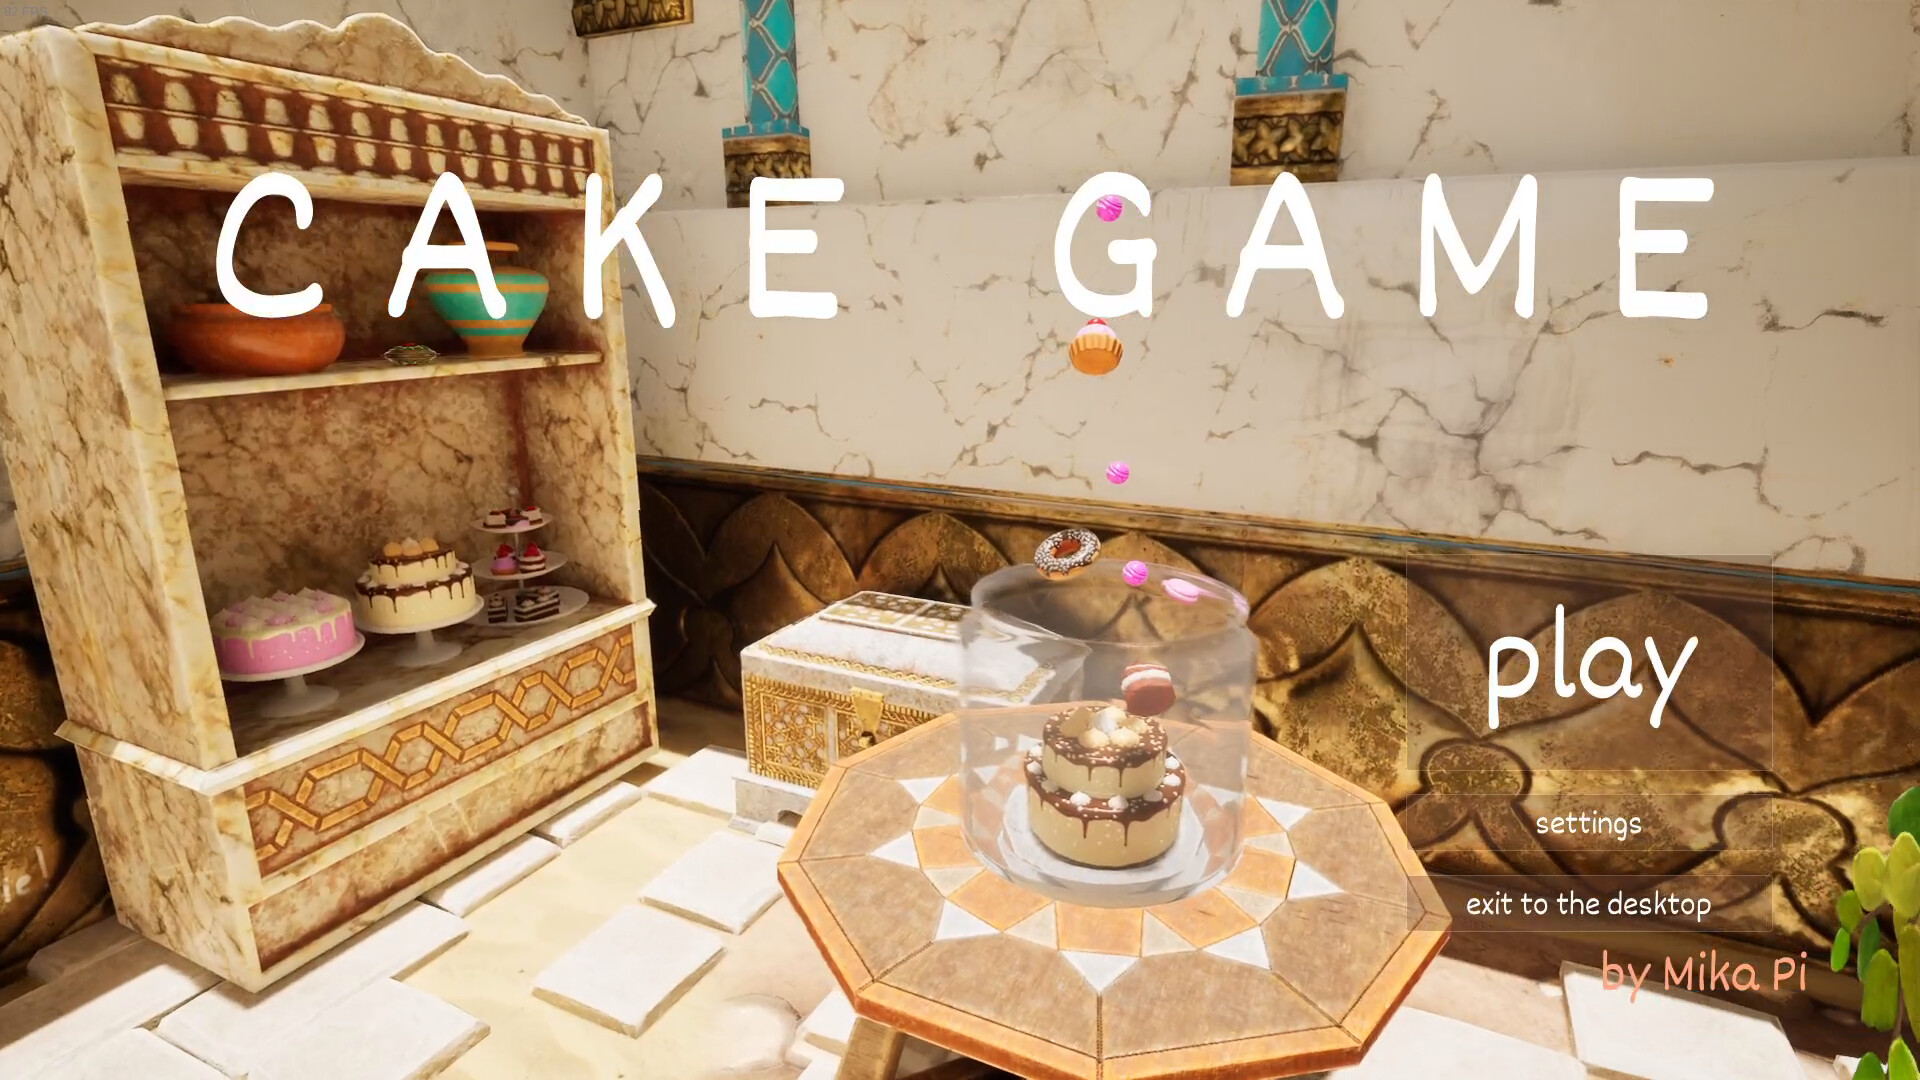 Fun Cooking Kitchen Kids Games - My Bakery Empire - Play Fun Cake Baking...  | Fun cooking, Amazing cakes, No bake cake